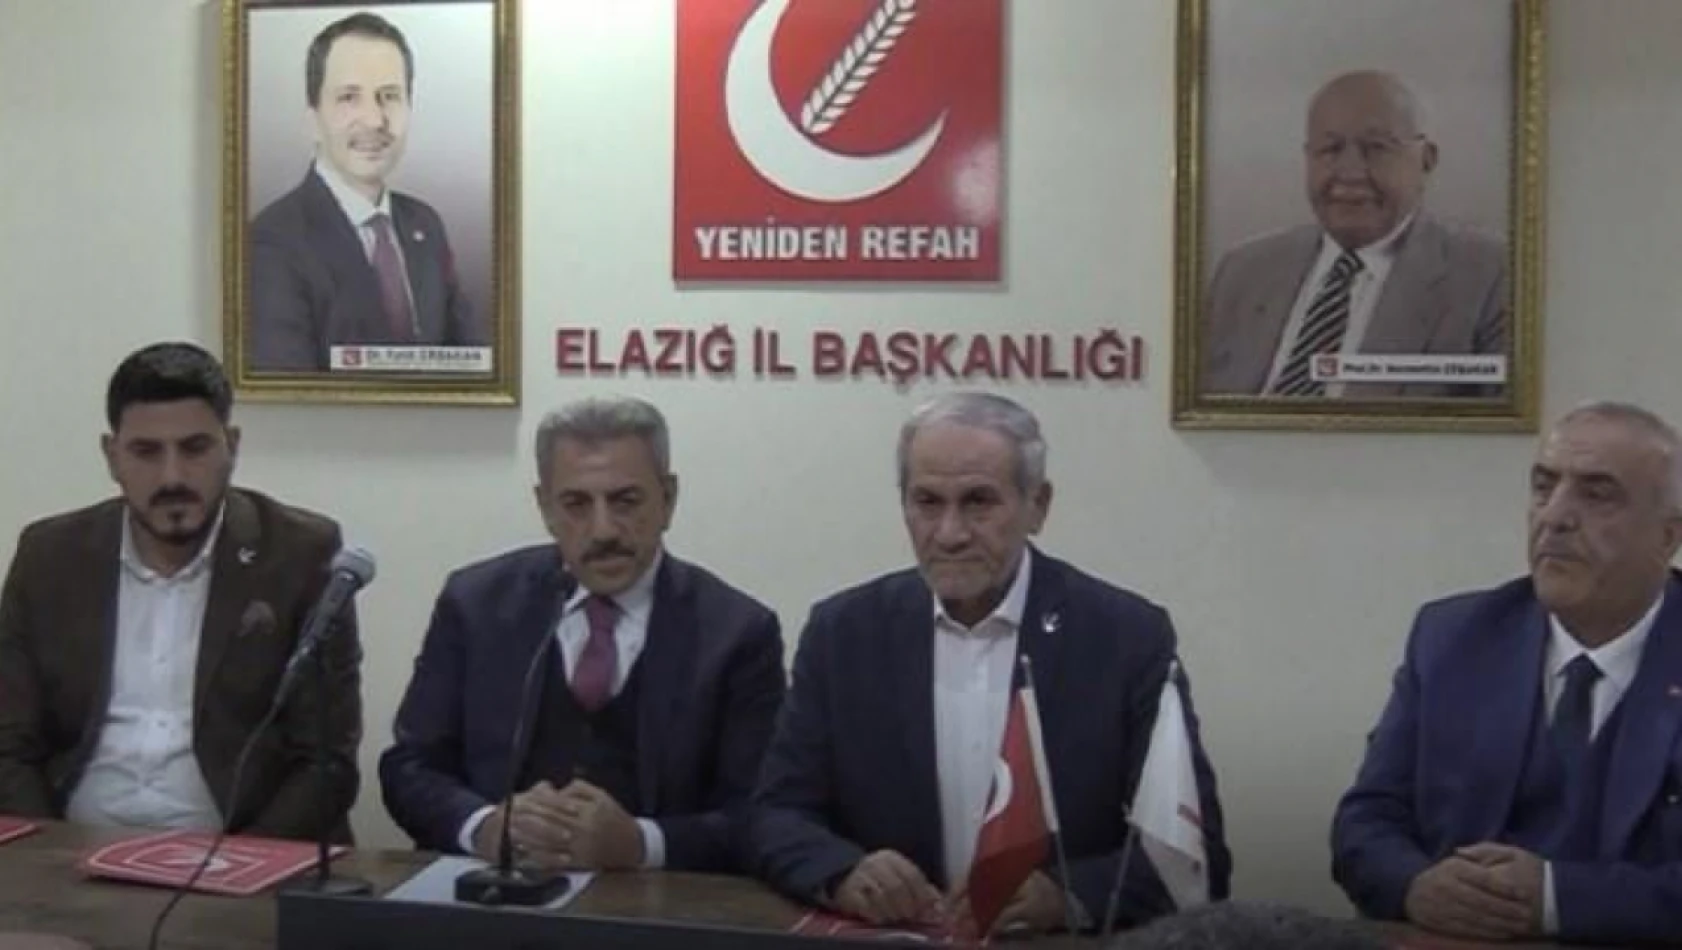 Bayram Öztürk, Yeniden refah partisi Beyhan belediye başkan adayı